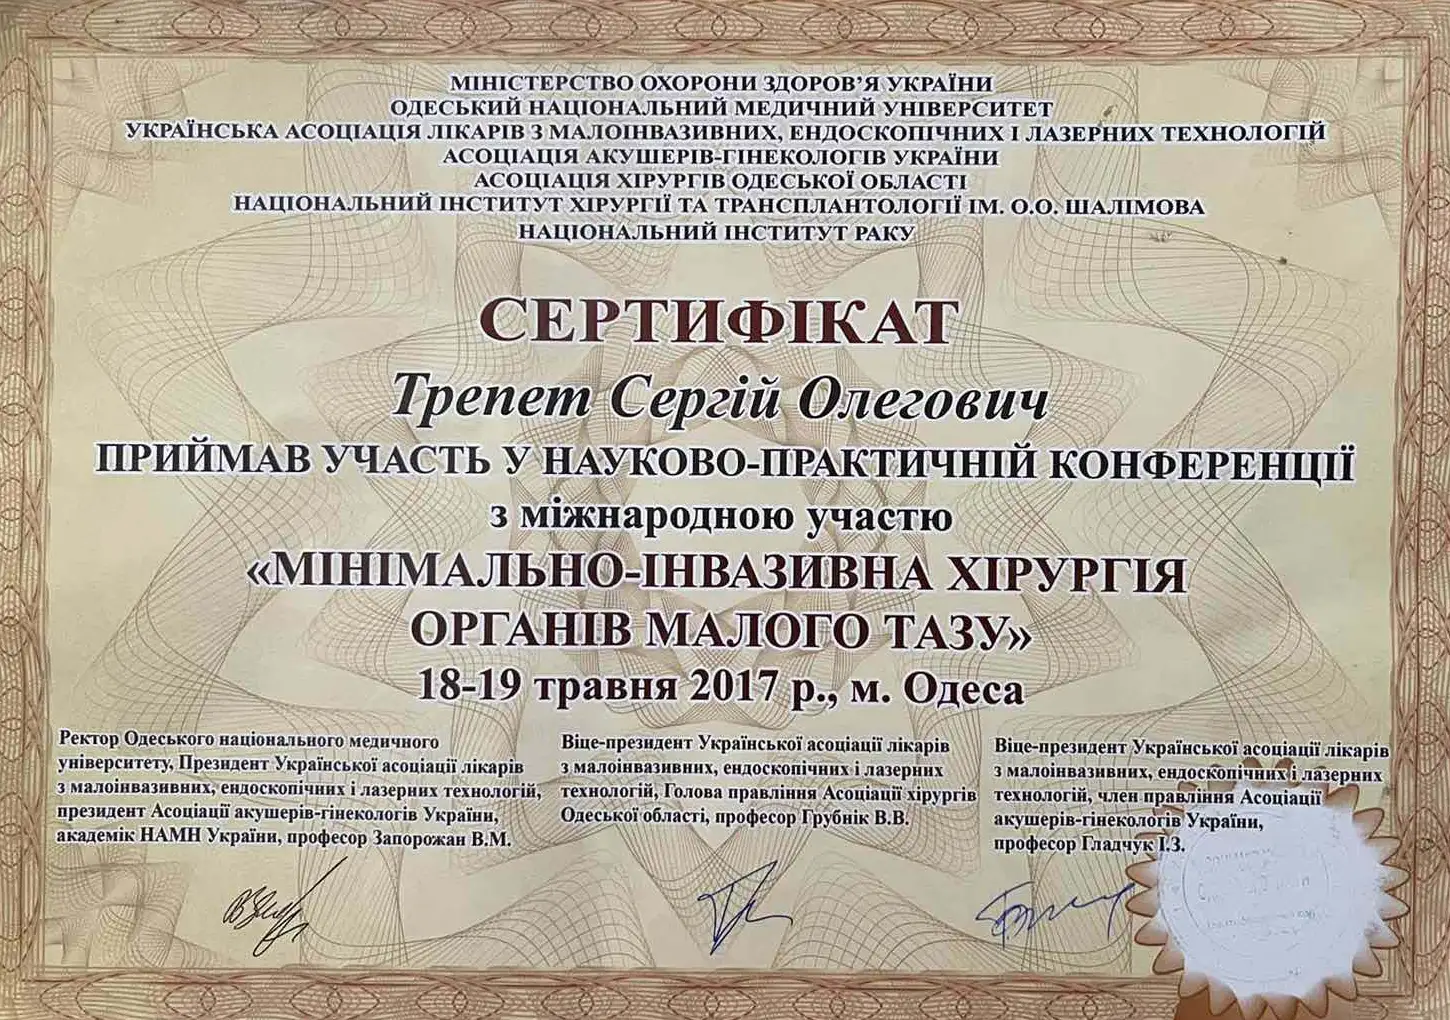 «Минимально инвазивная хирургия органов малого таза» в г. Одесса